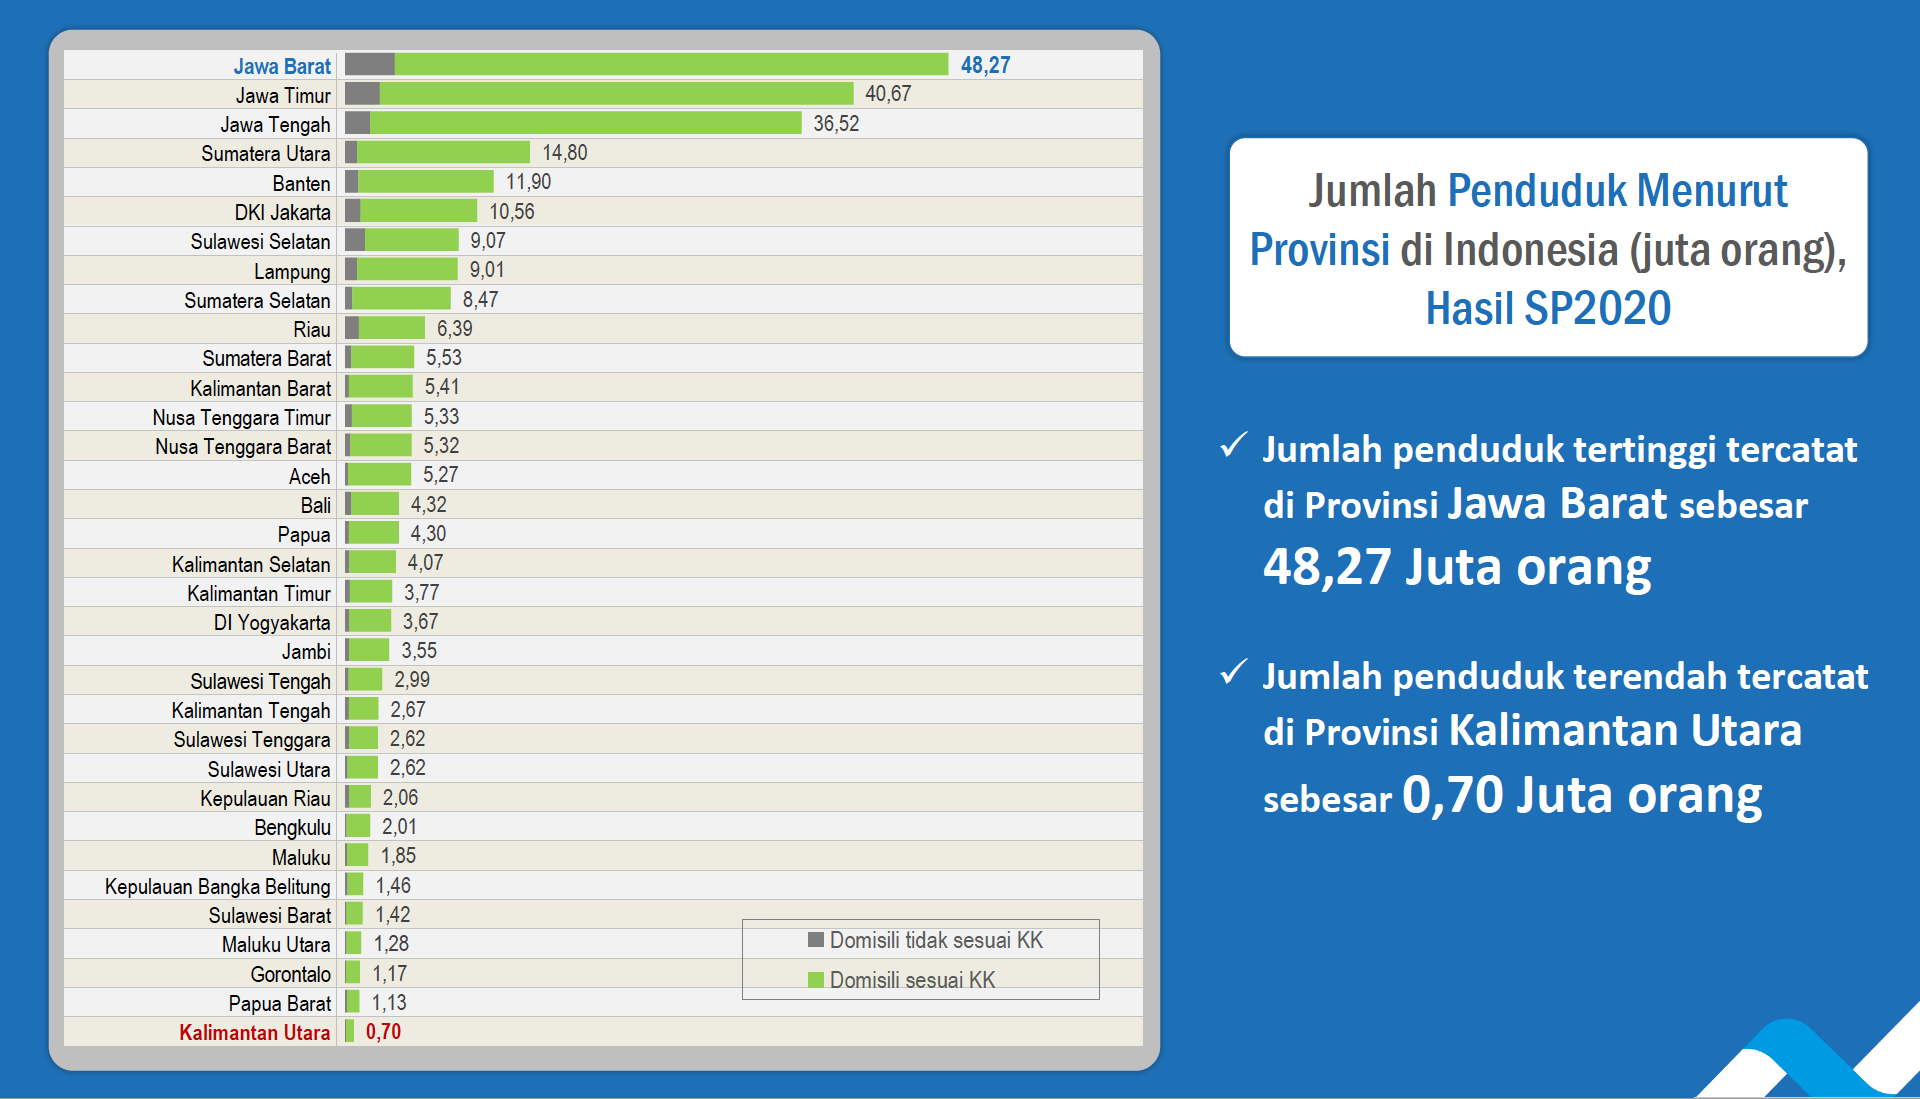 Pulau di indonesia yang memiliki jumlah penduduk paling banyak adalah